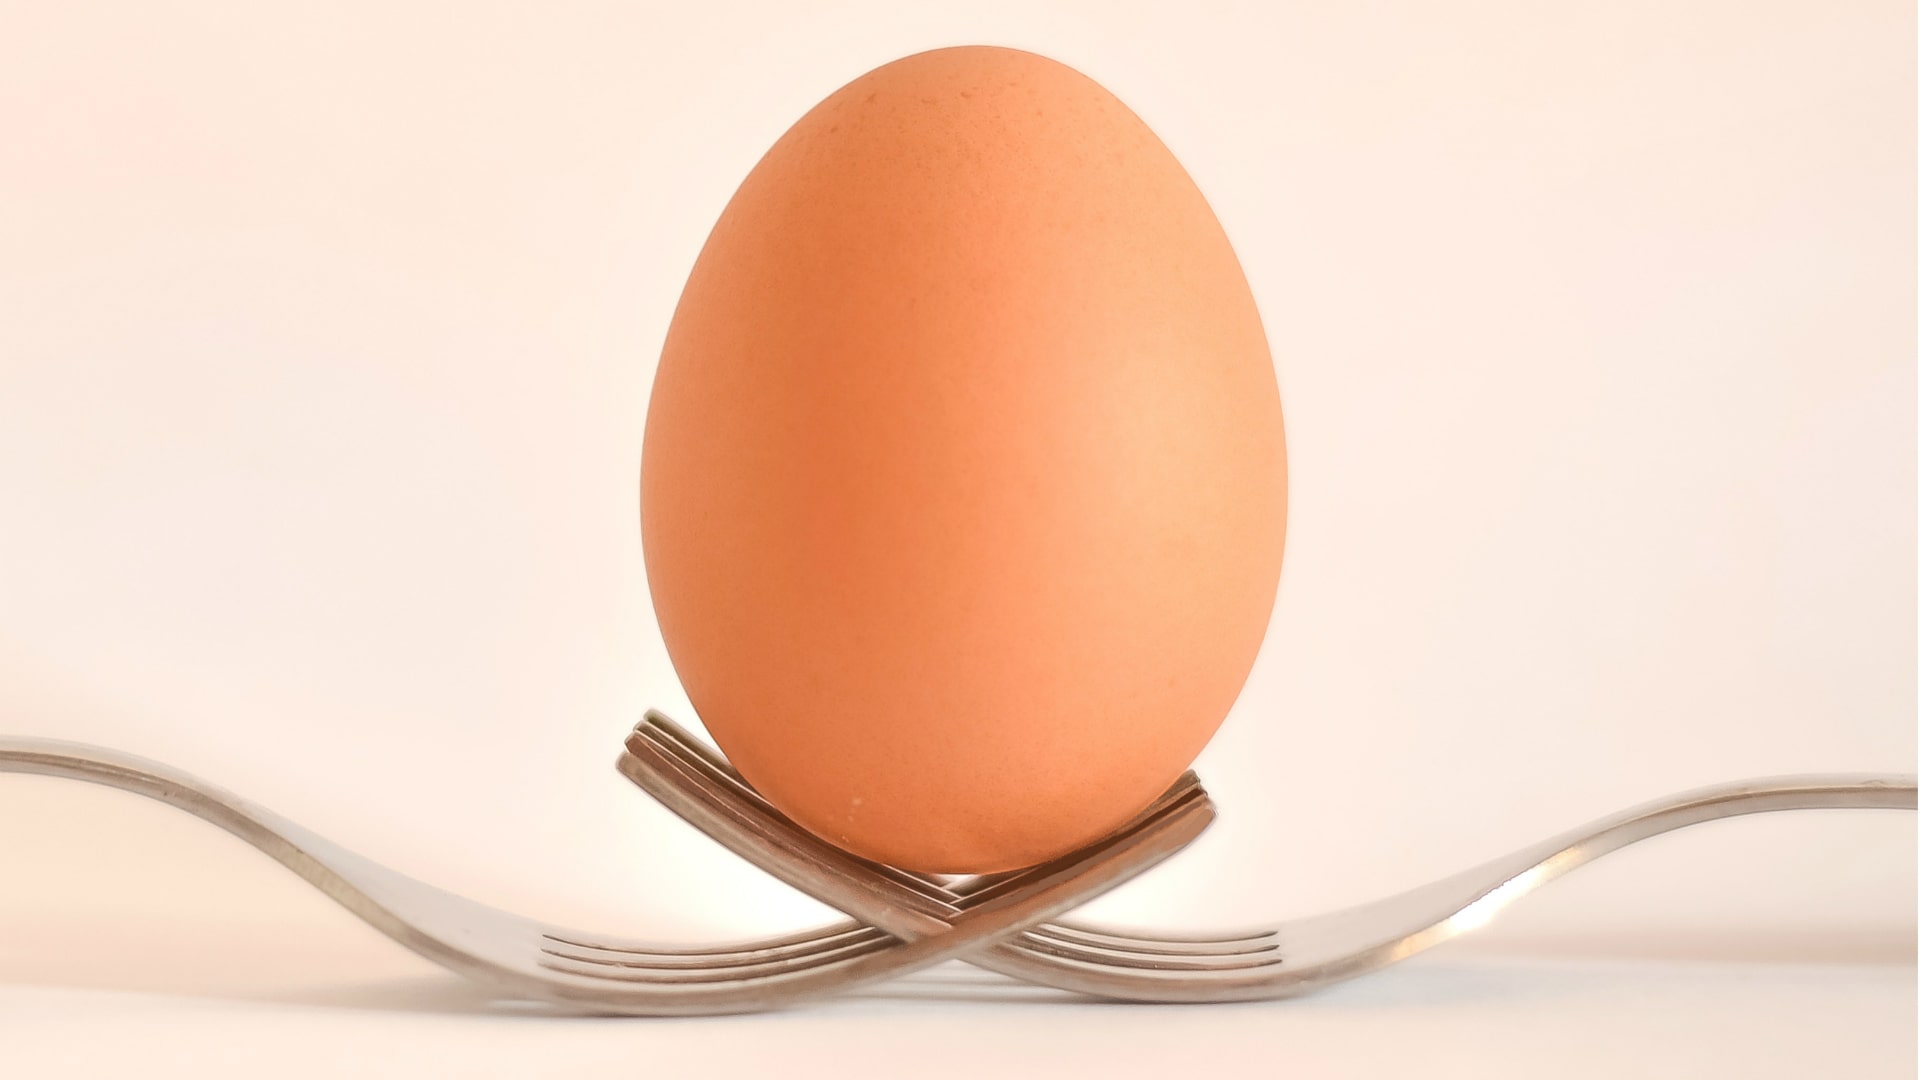 Foto de capa do artigo "Ovo e colesterol: o segredo é o equilíbrio na ingestão"